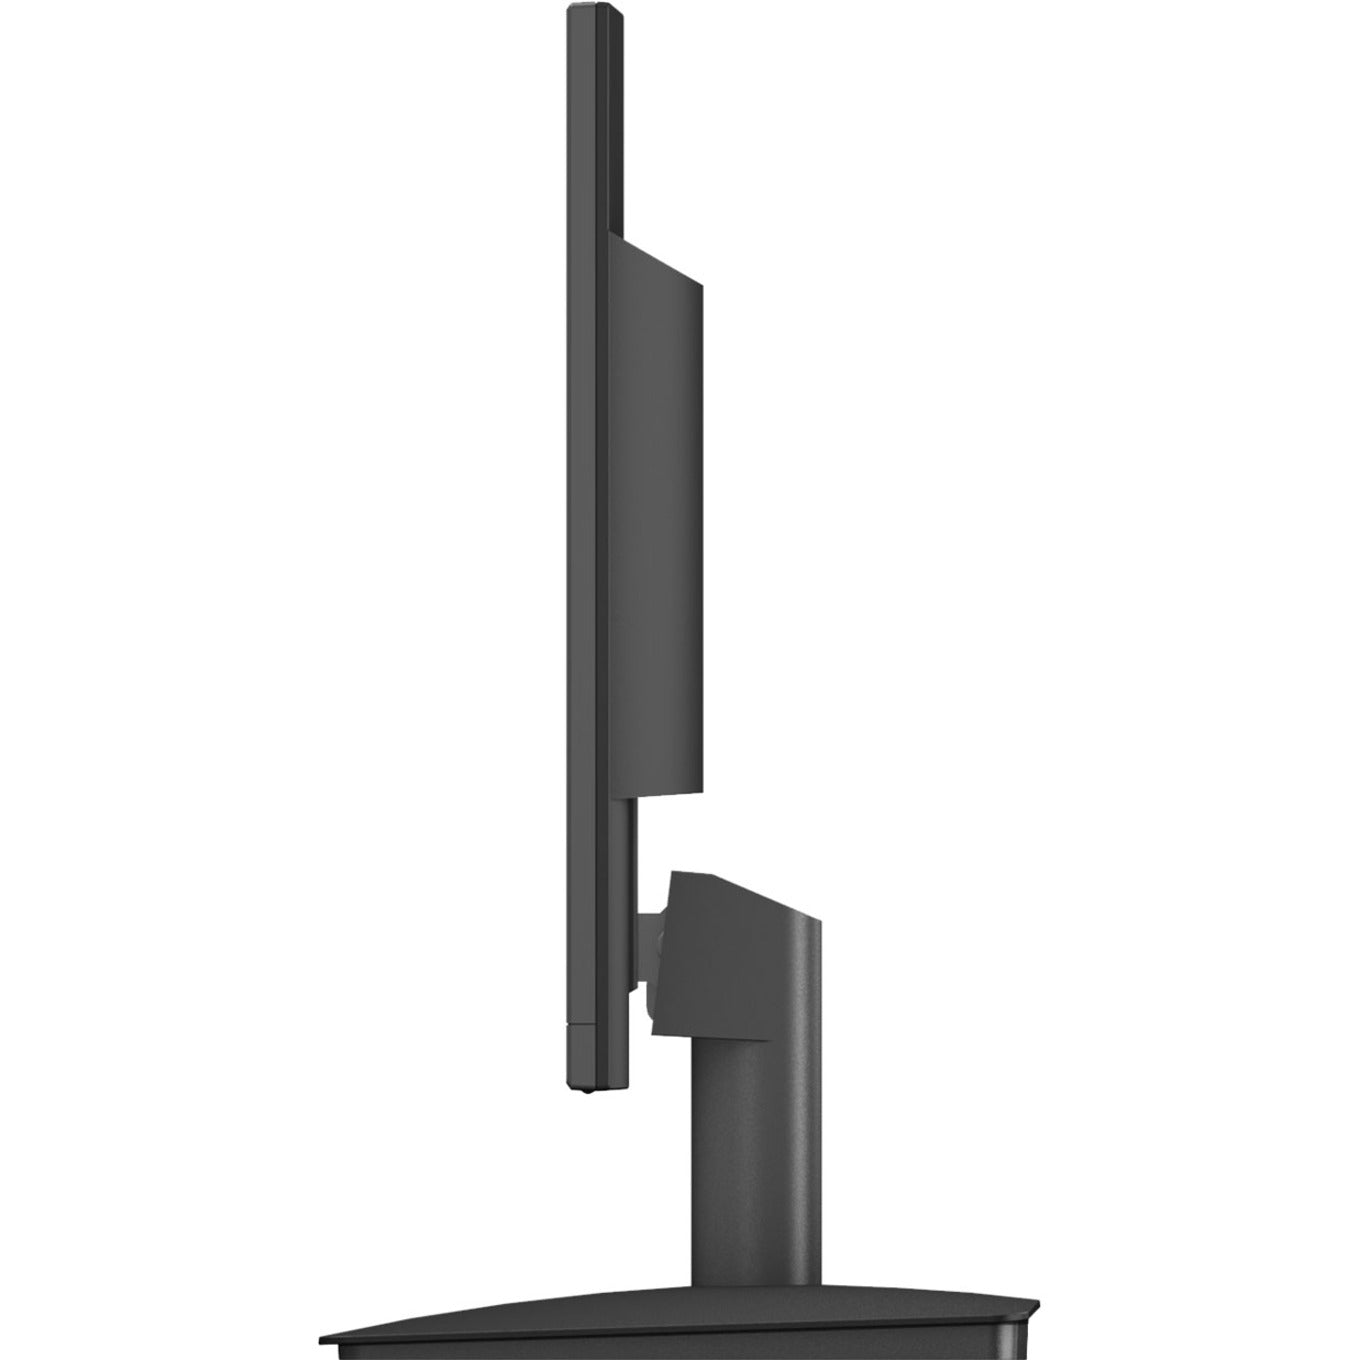 Planar 997-9045-00 PLL2450MW Full HD LCD Monitor, 24" Black, 3-Year Warranty